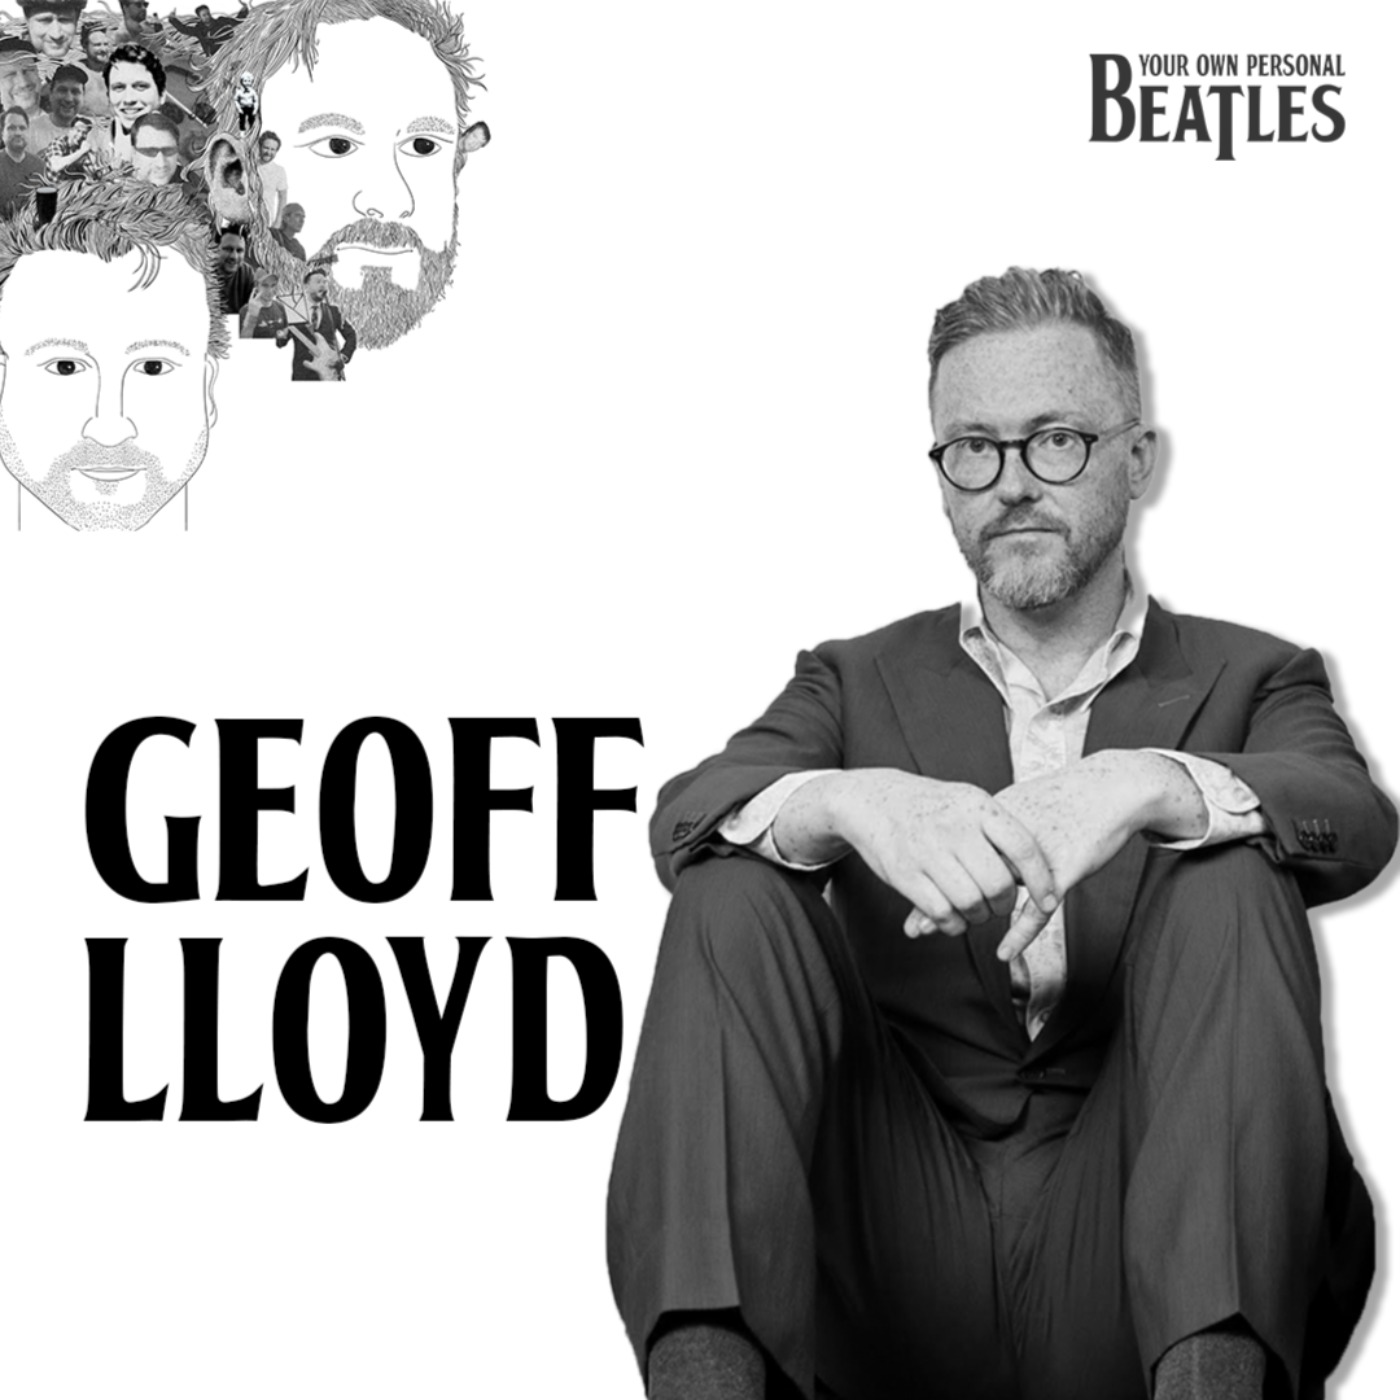 Geoff Lloyd's Personal Beatles